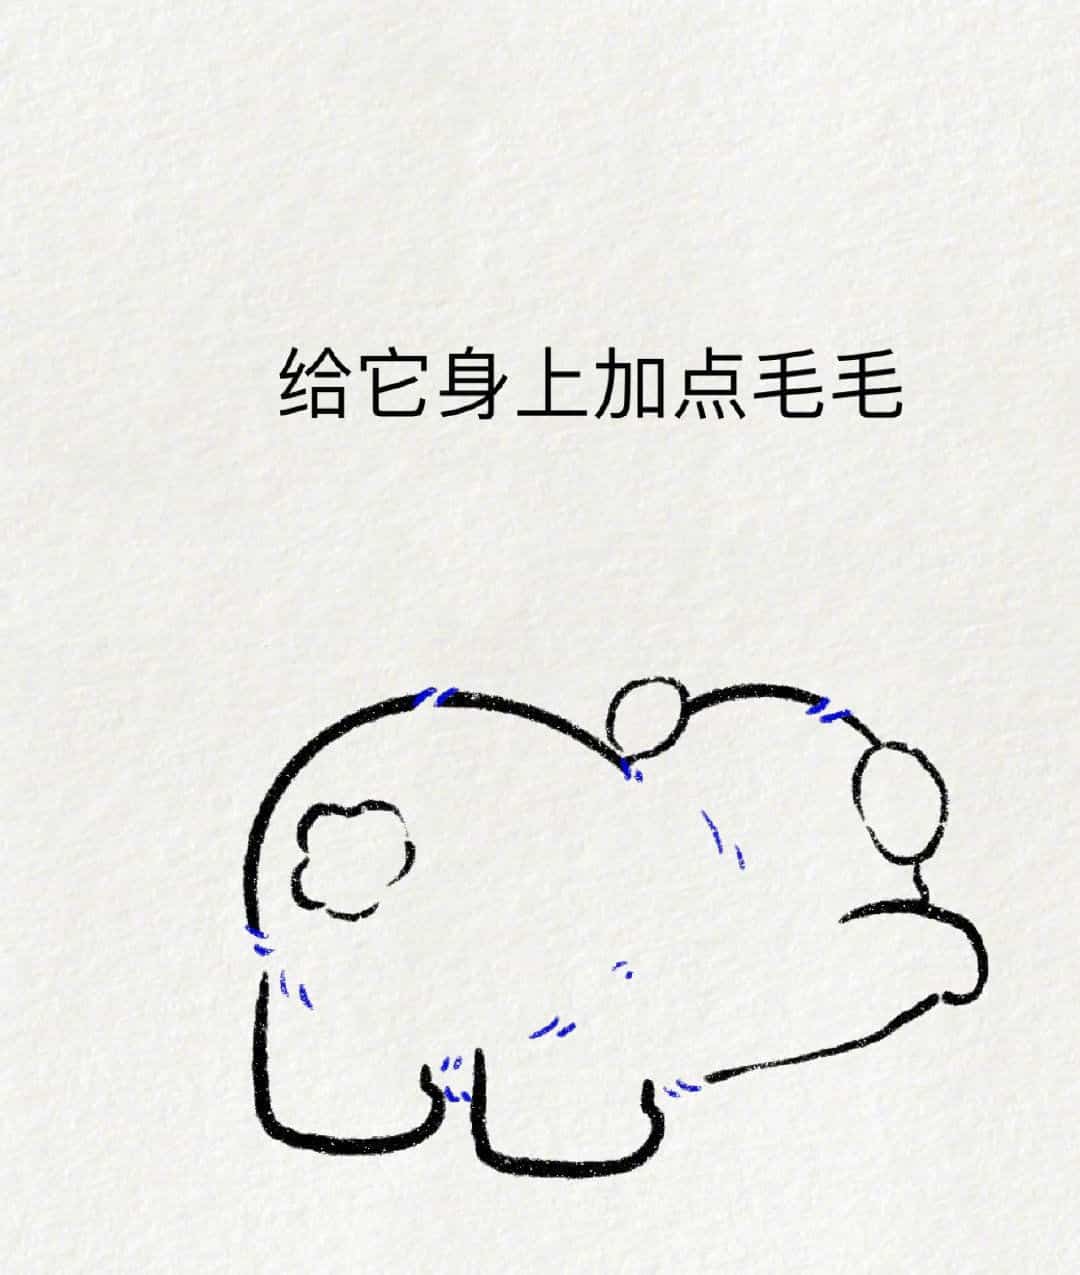 可爱动物大熊猫趴地撅屁股简笔画画法教程图片_5